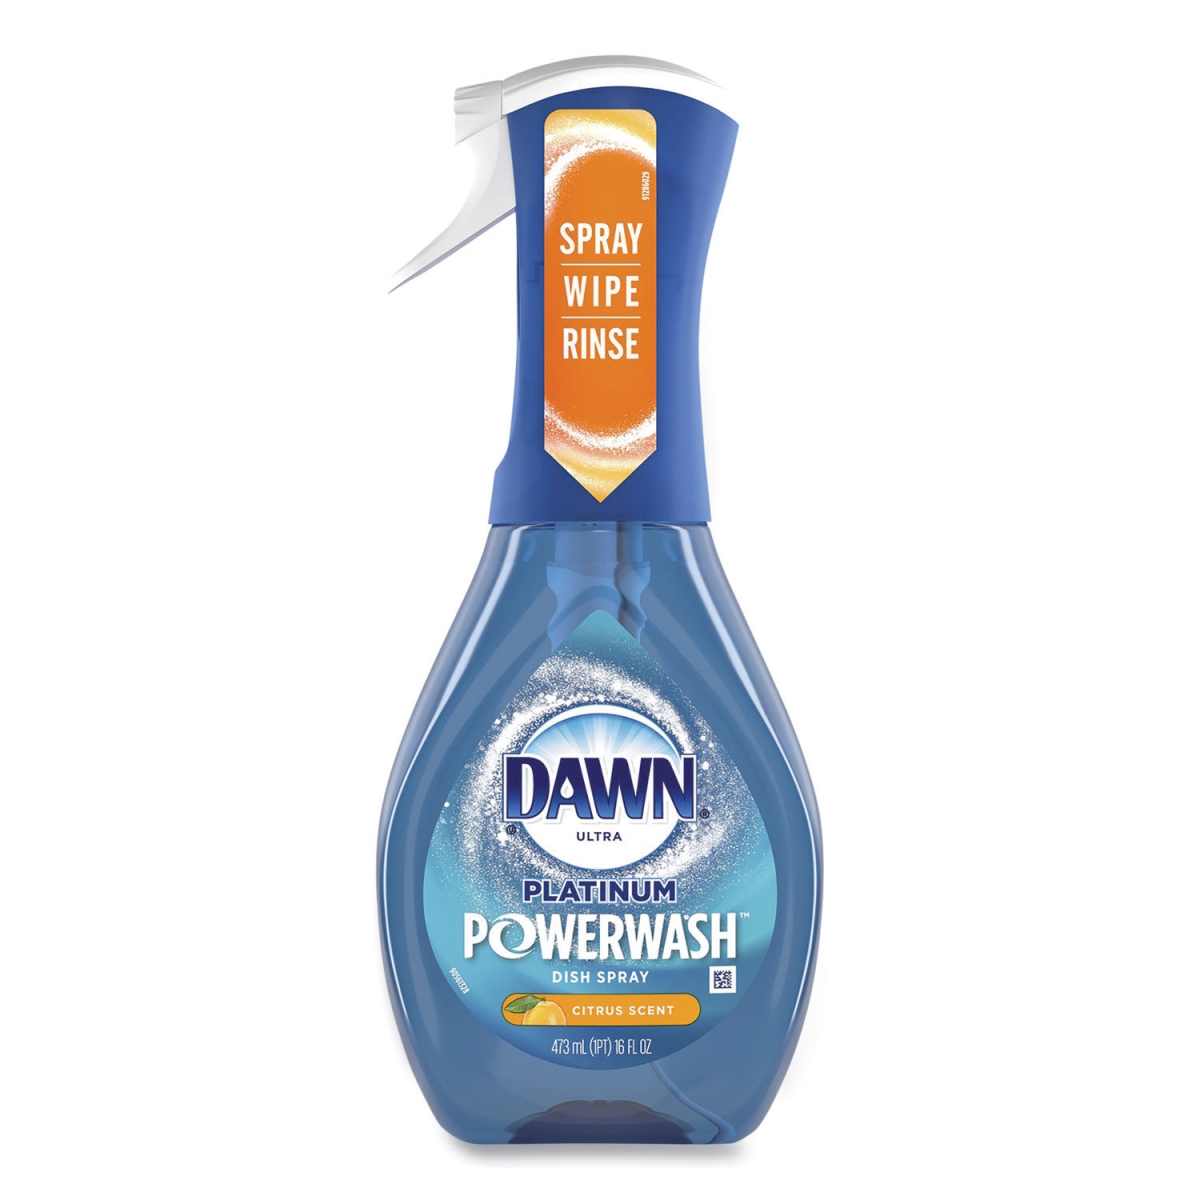 Picture of Procter & Gamble 40657 16 oz Citrus Scent Platinum Powerwash Dish Spray